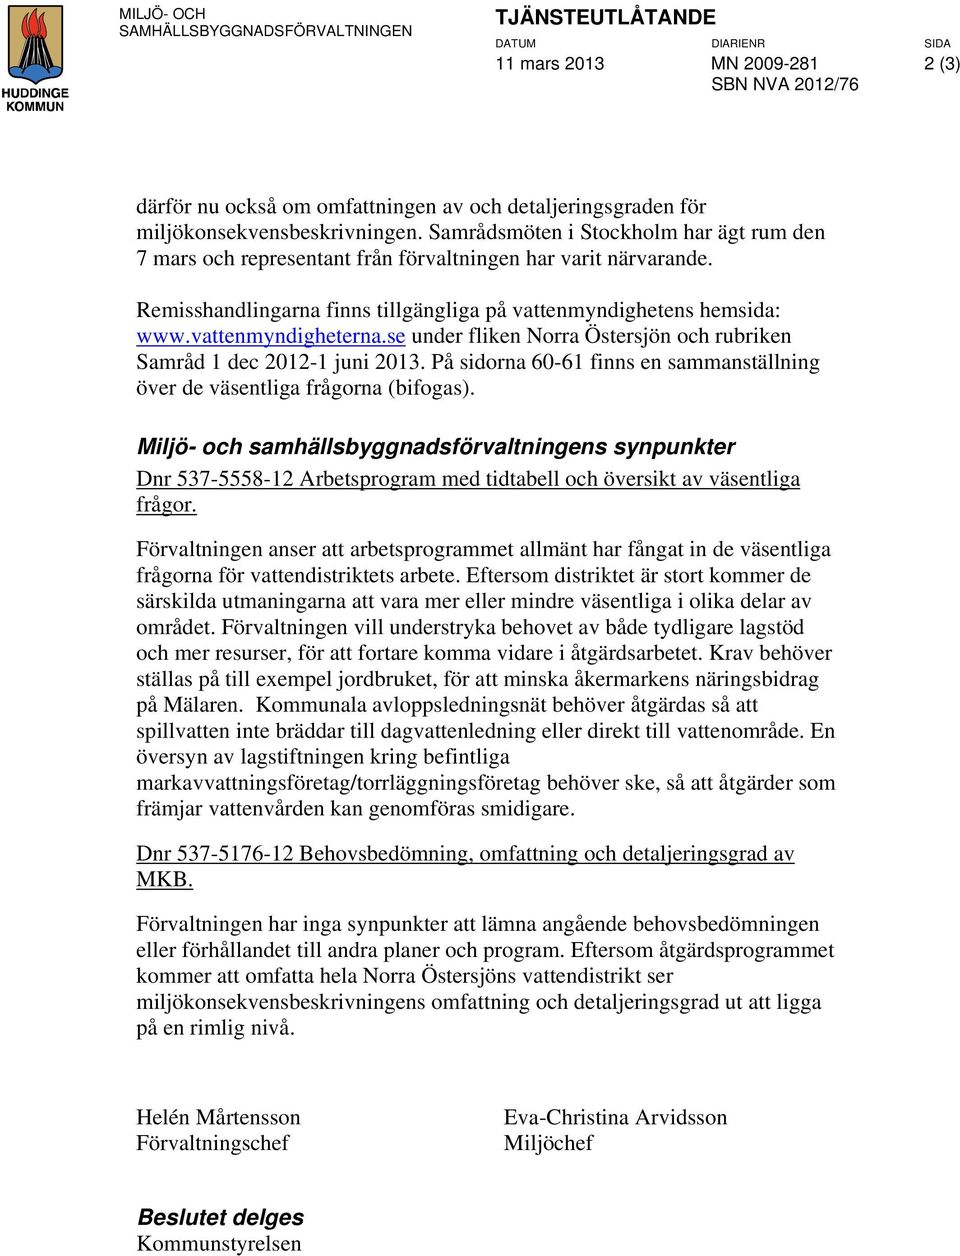 se under fliken Norra Östersjön och rubriken Samråd 1 dec 2012-1 juni 2013. På sidorna 60-61 finns en sammanställning över de väsentliga frågorna (bifogas).